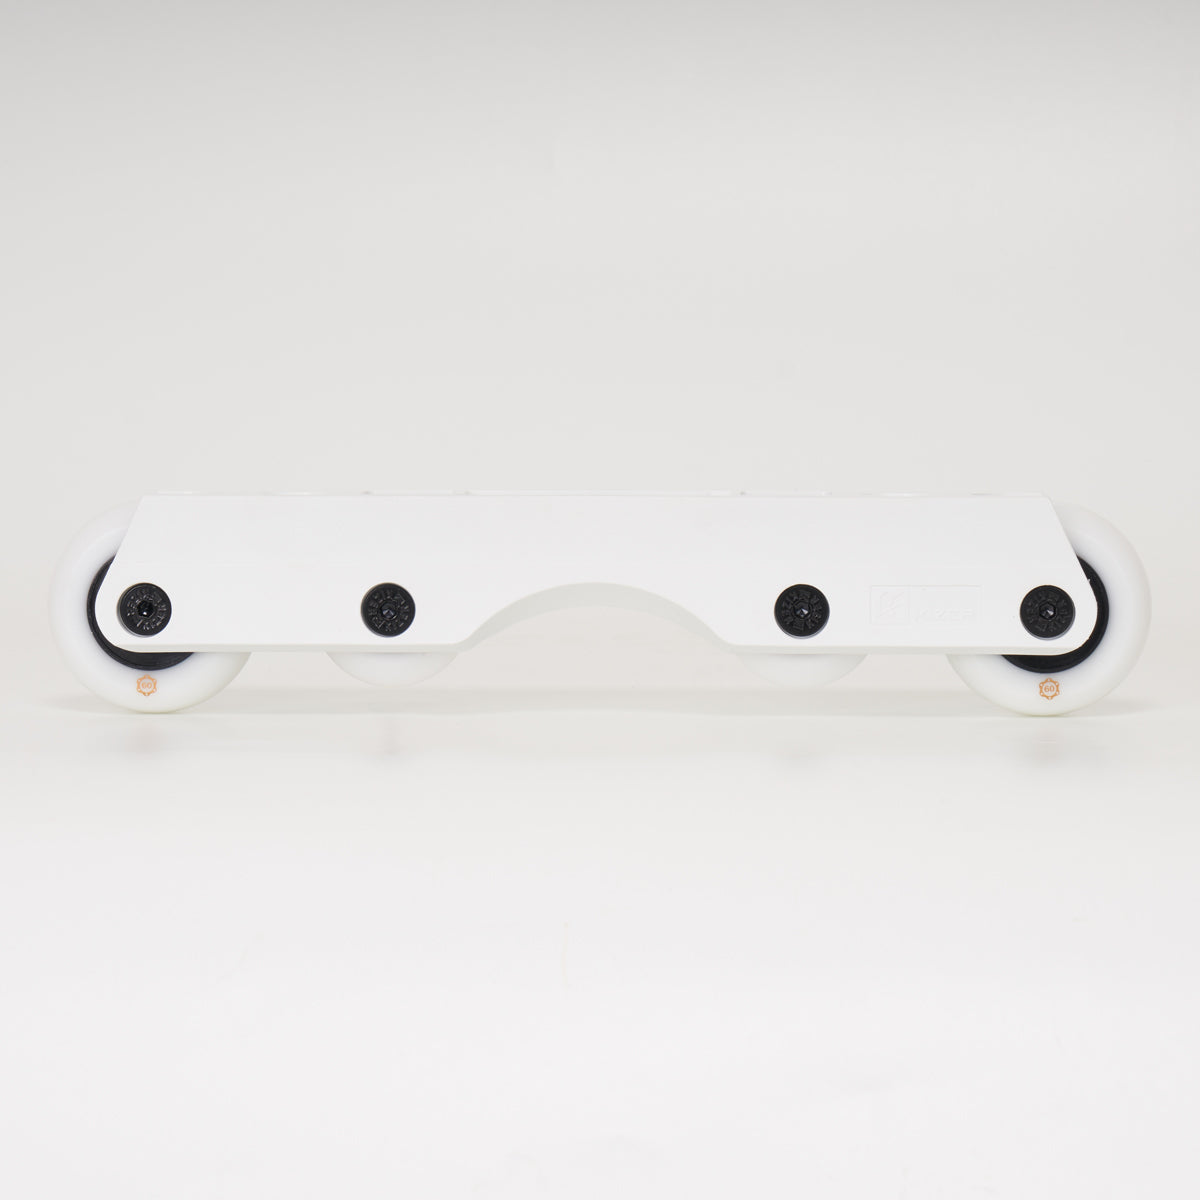 Kizer Fluid 4 Antirocker White Frames - Loco 'GET SET' Wheel/Frame Set